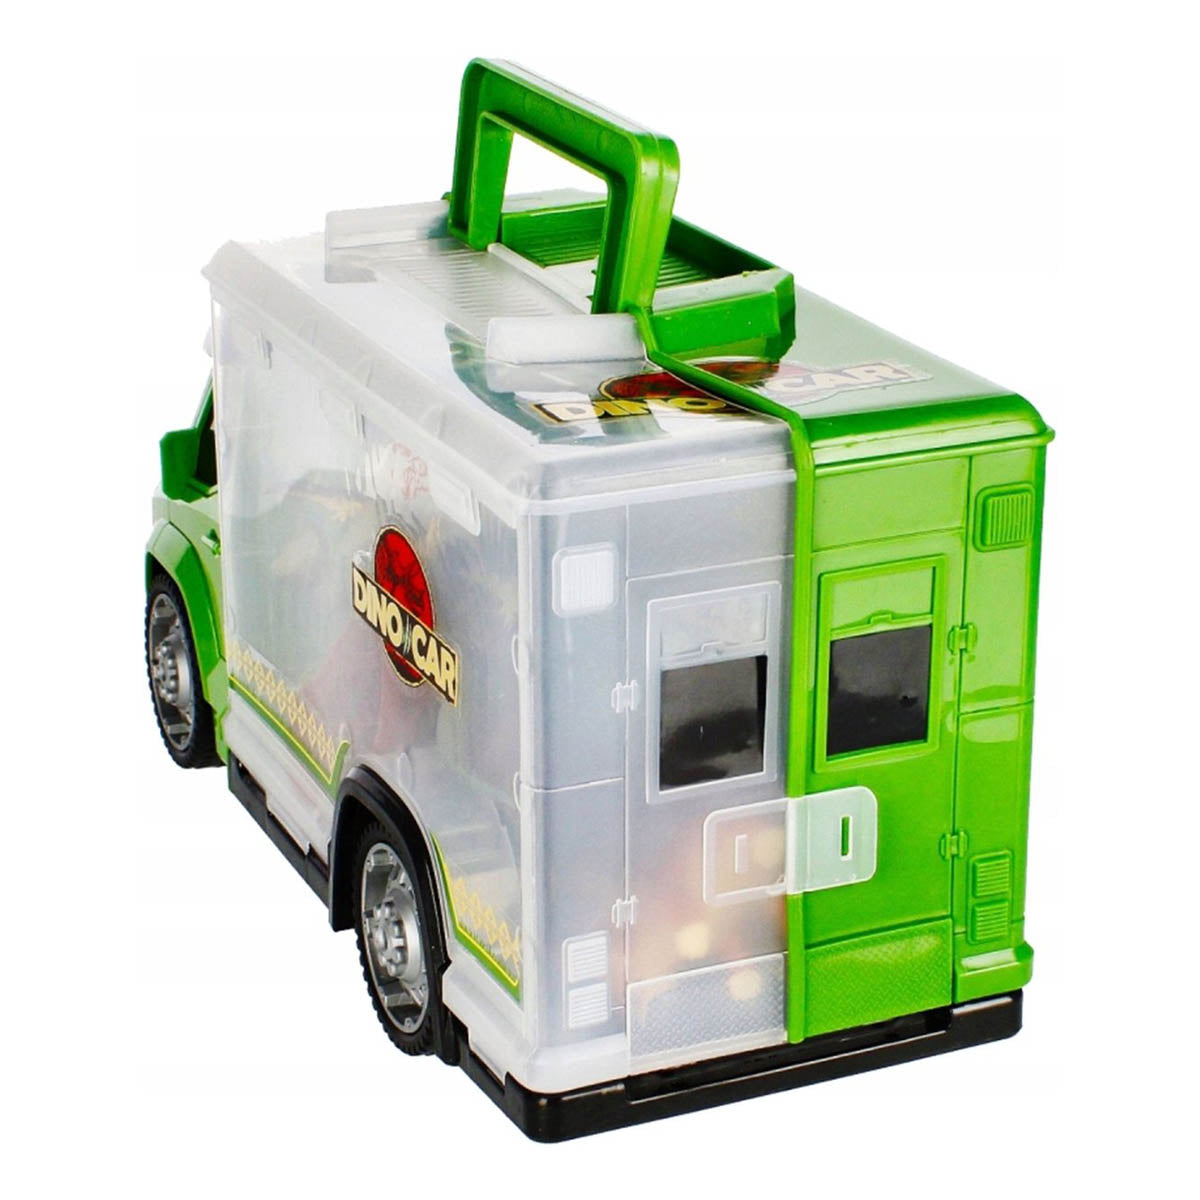 Ariko Dino transport truck - met 5 x dinosaurussen - 2 x Dinosaurus ei - Diverse aankleding - Inclusief batterijen